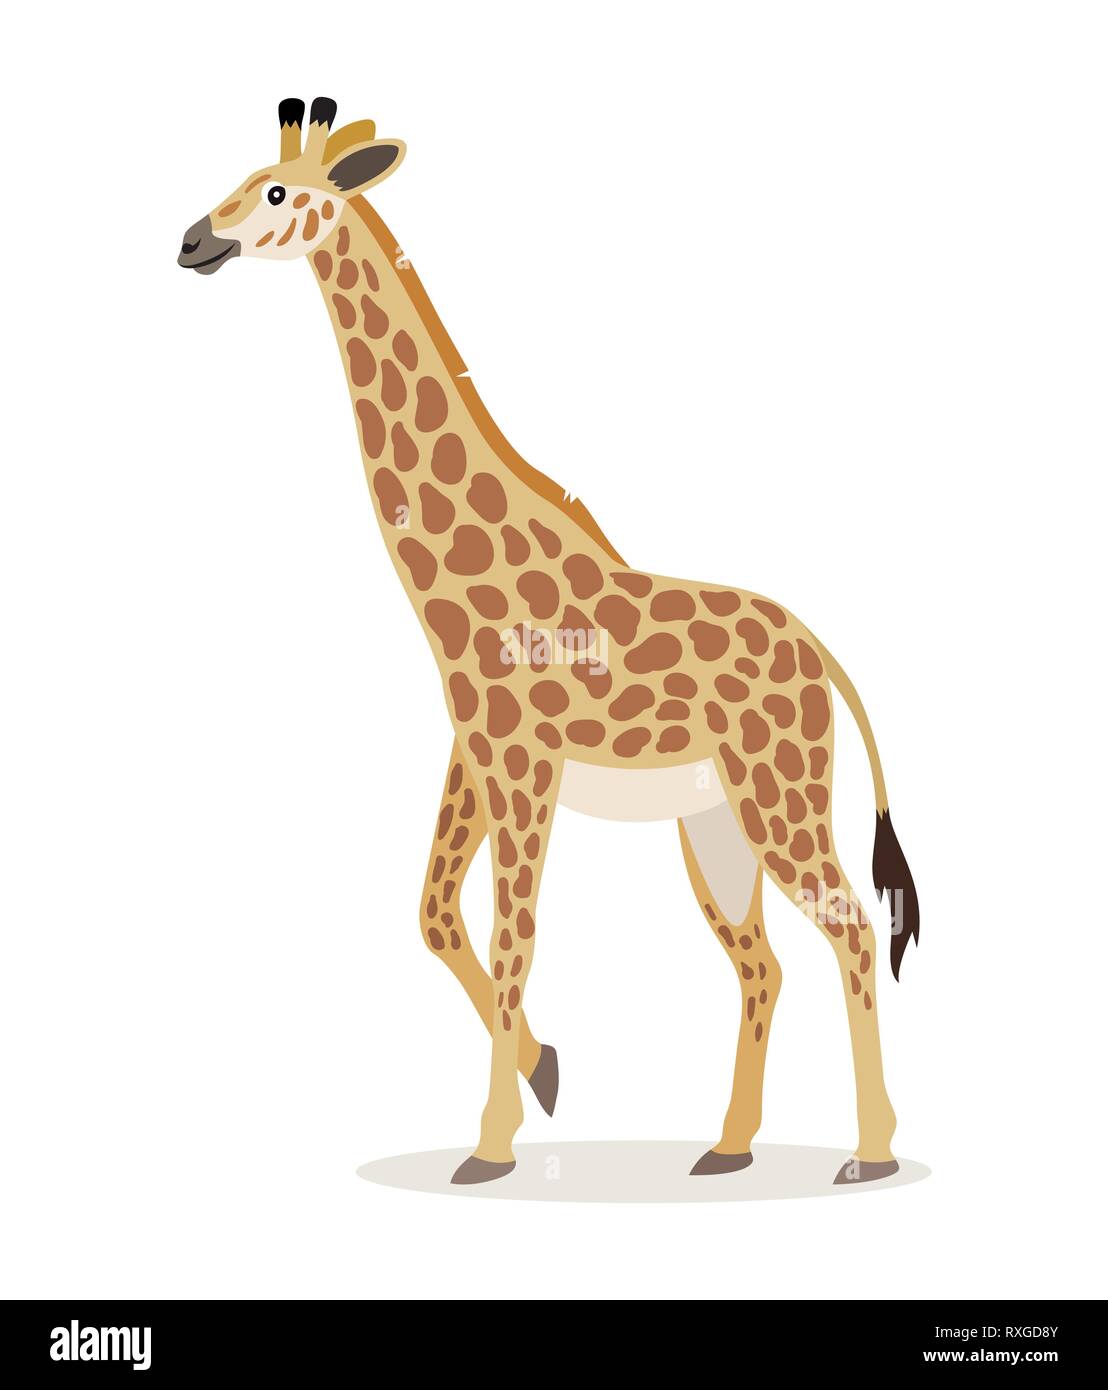 Afrikanische Tier, niedliche giraffe Symbol auf weißem Hintergrund, Tier mit dem langen Hals, Vektor Stock Vektor